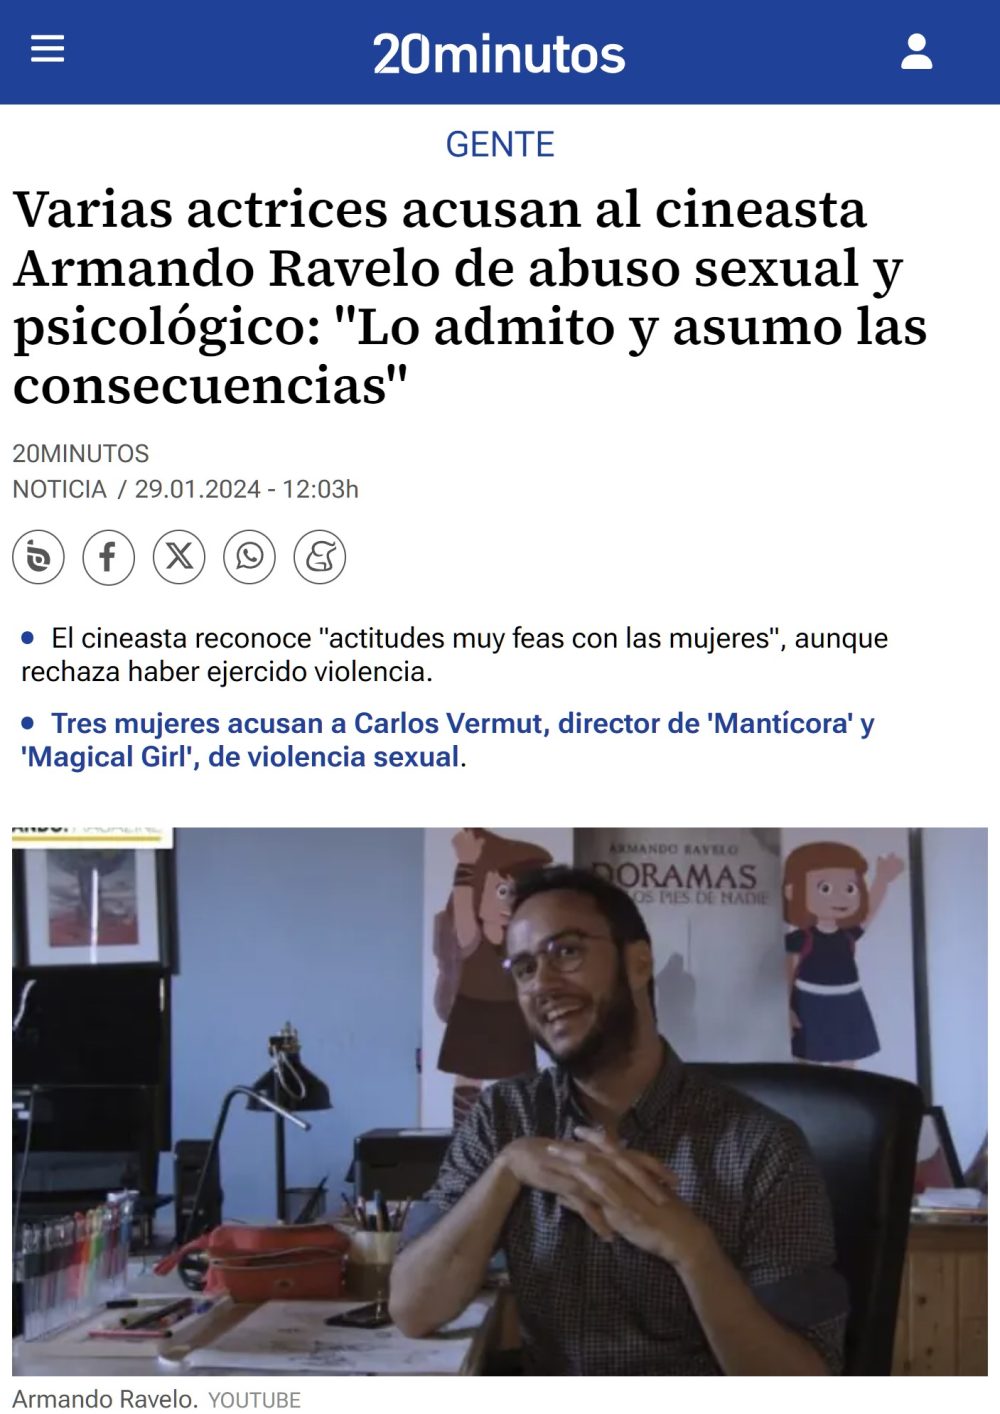 El cineasta Armando Ravelo, acusado de abusos: "Lo admito y asumo las consecuencias".